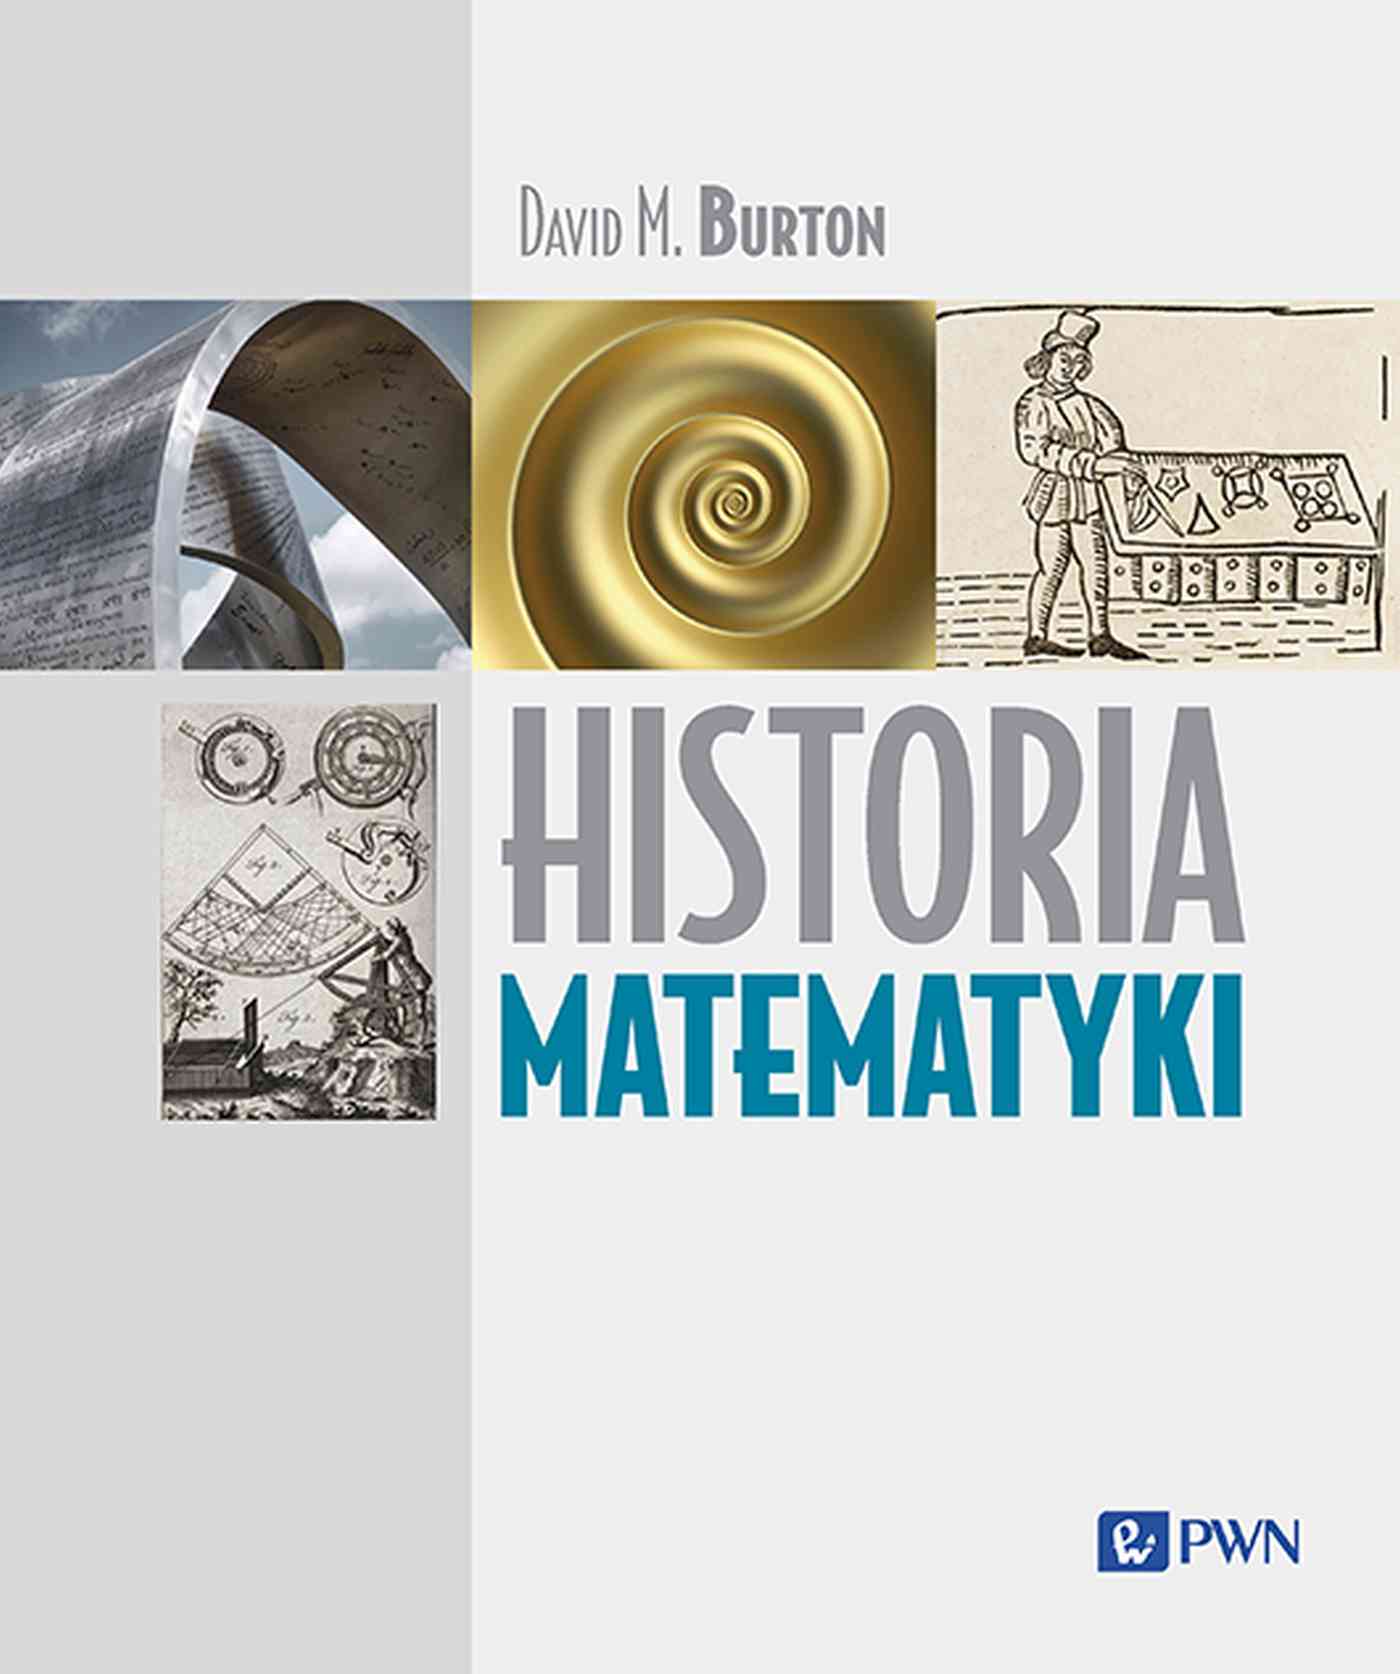 "Historia matematyki"